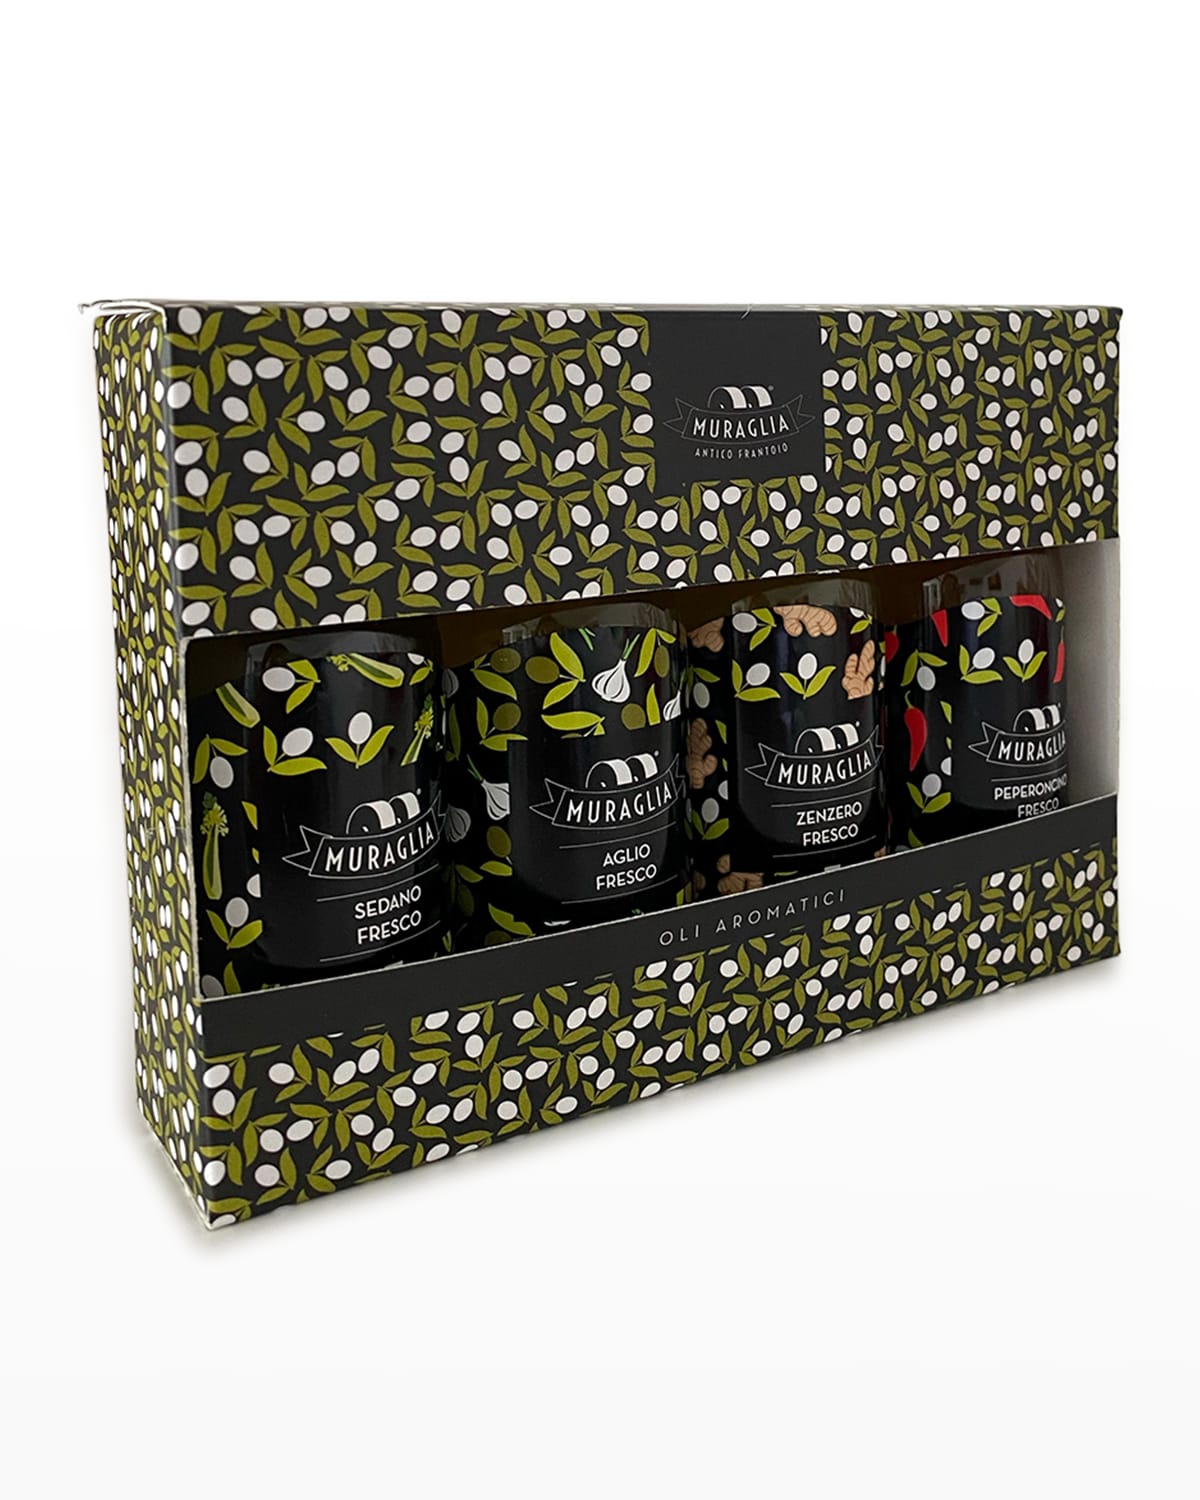 Spiced Line Extra Virgin Olive Oil Tasting Box - Pepper, Ginger, Garlic & Celery - 4 x 1.69 oz. Bottles